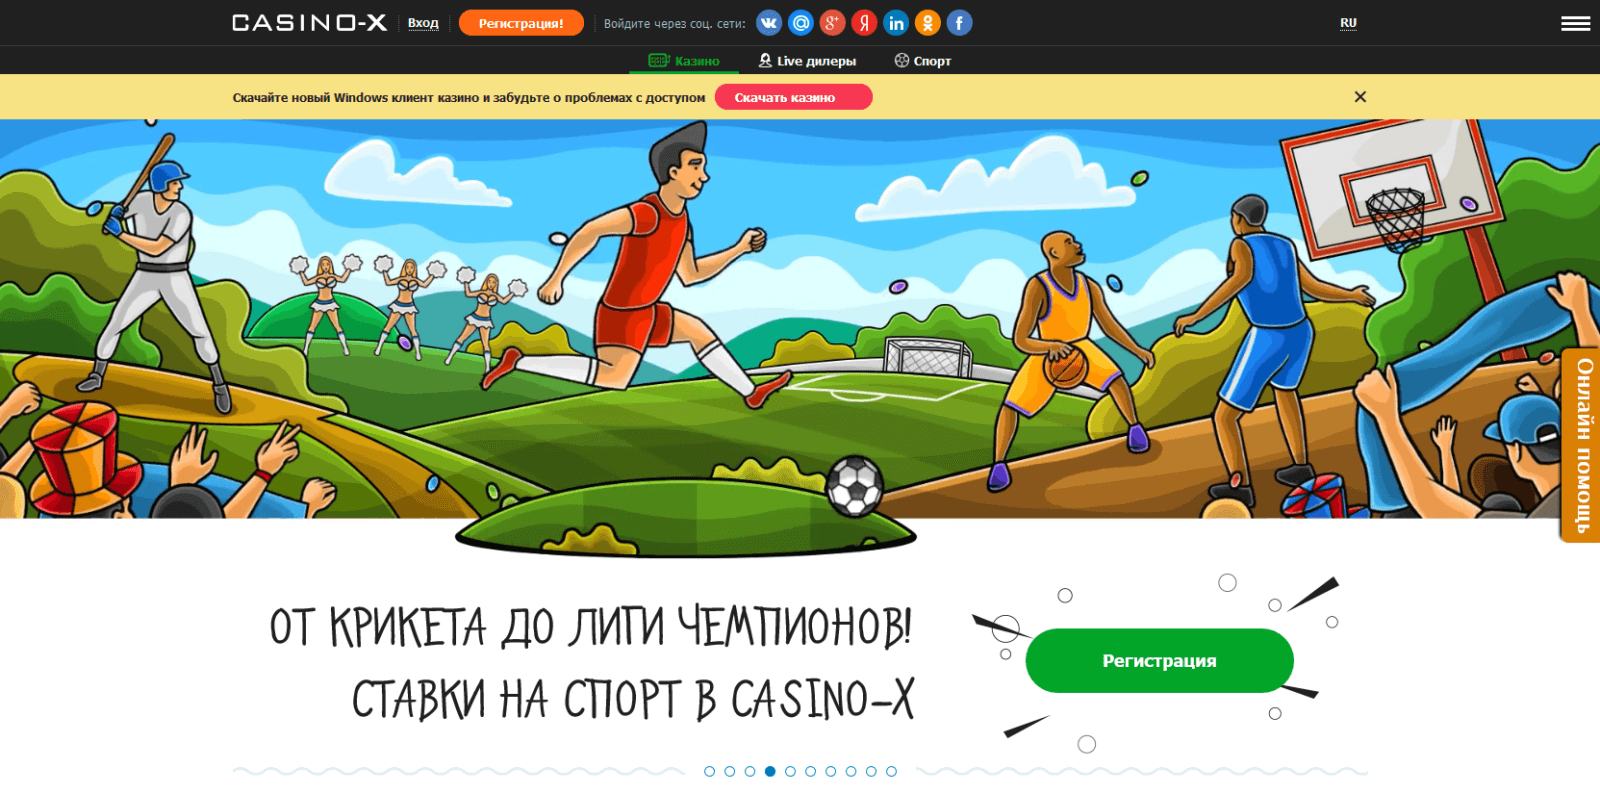 Casino x мобильная версия 2 x2021 ru онлайн казино нетгейм